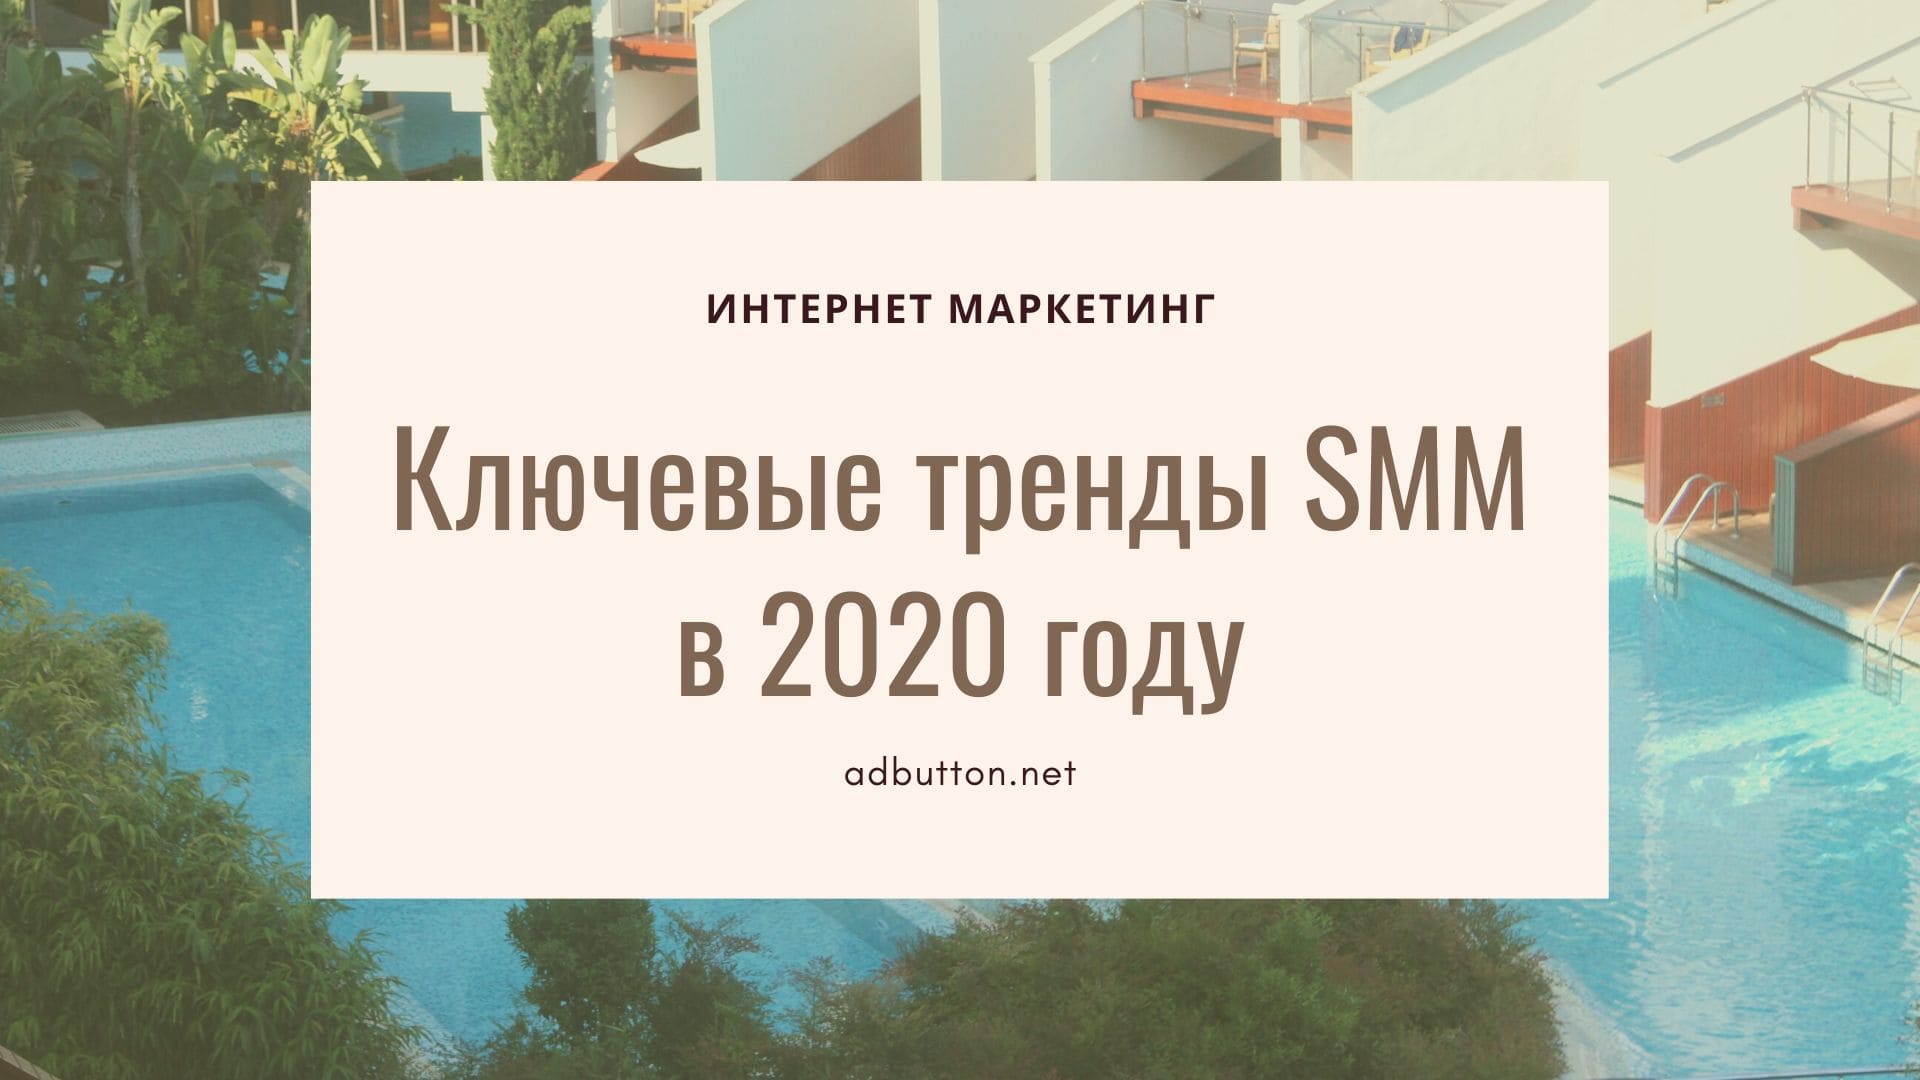 Ключевые тренды SMM в 2020 году и инструменты продвижения бизнеса